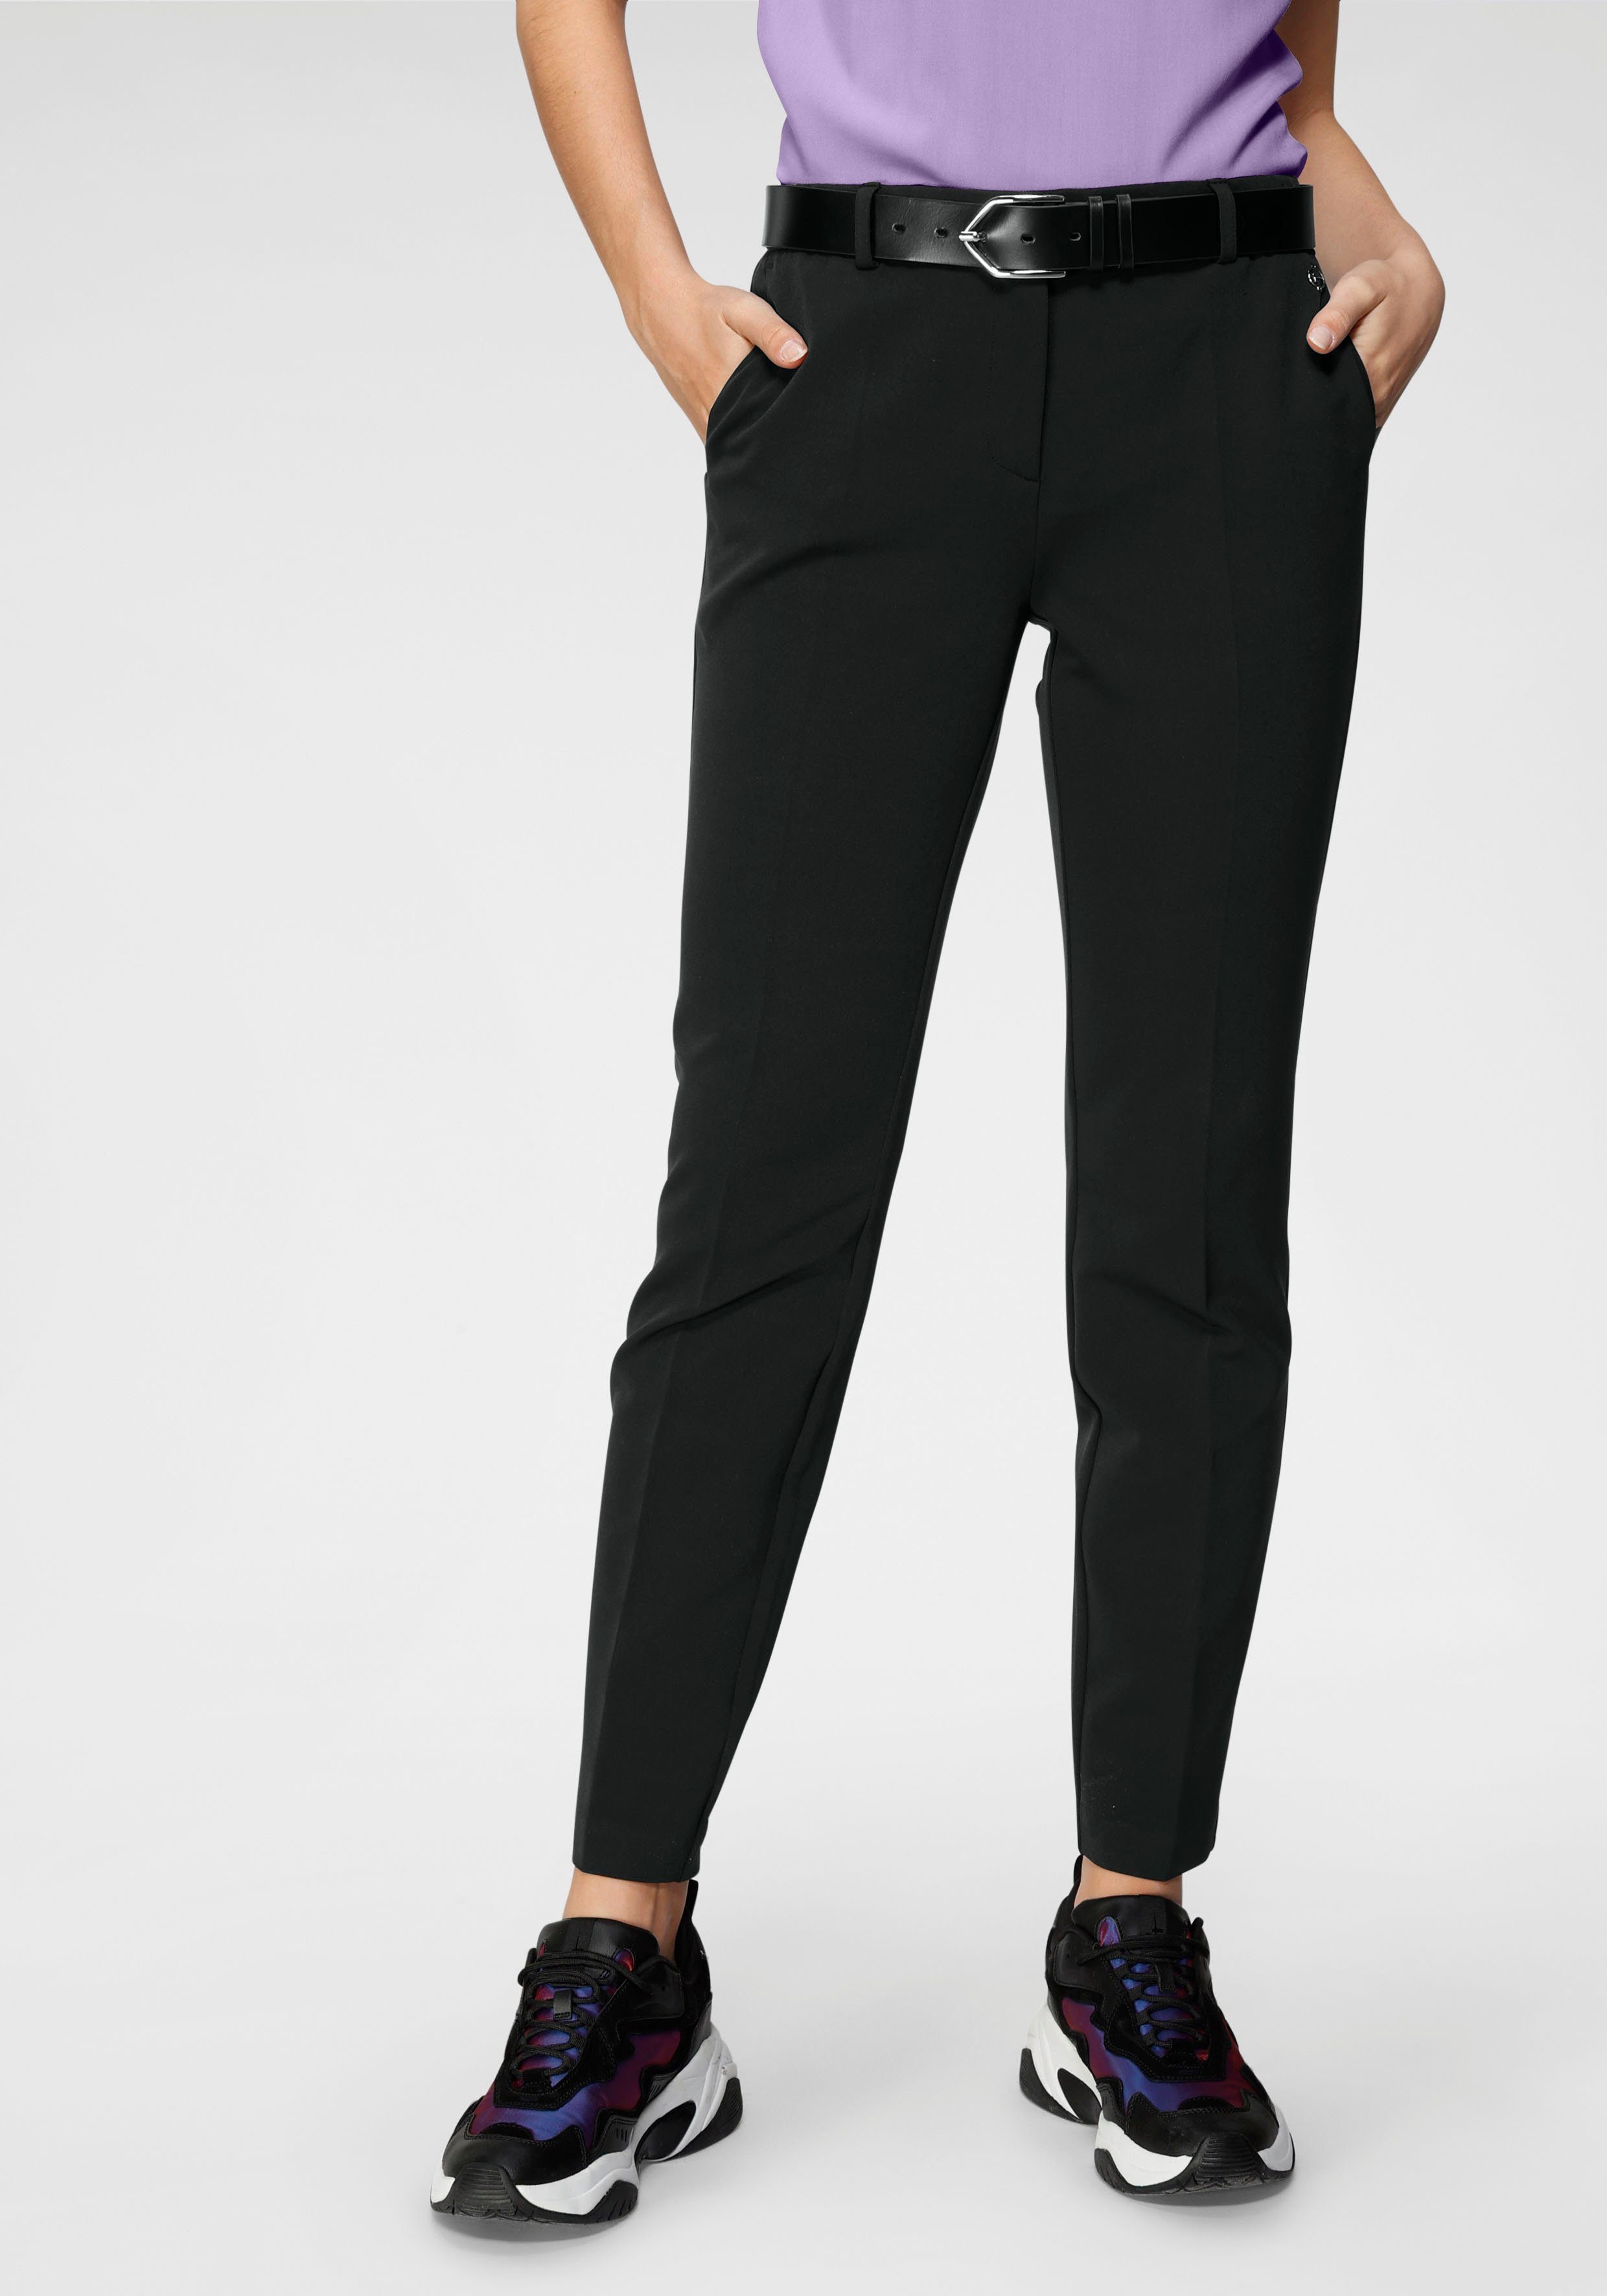 Tamaris Anzughose in Trendfarben schwarz ( Hose aus nachhaltigem Material) | Stretchhosen